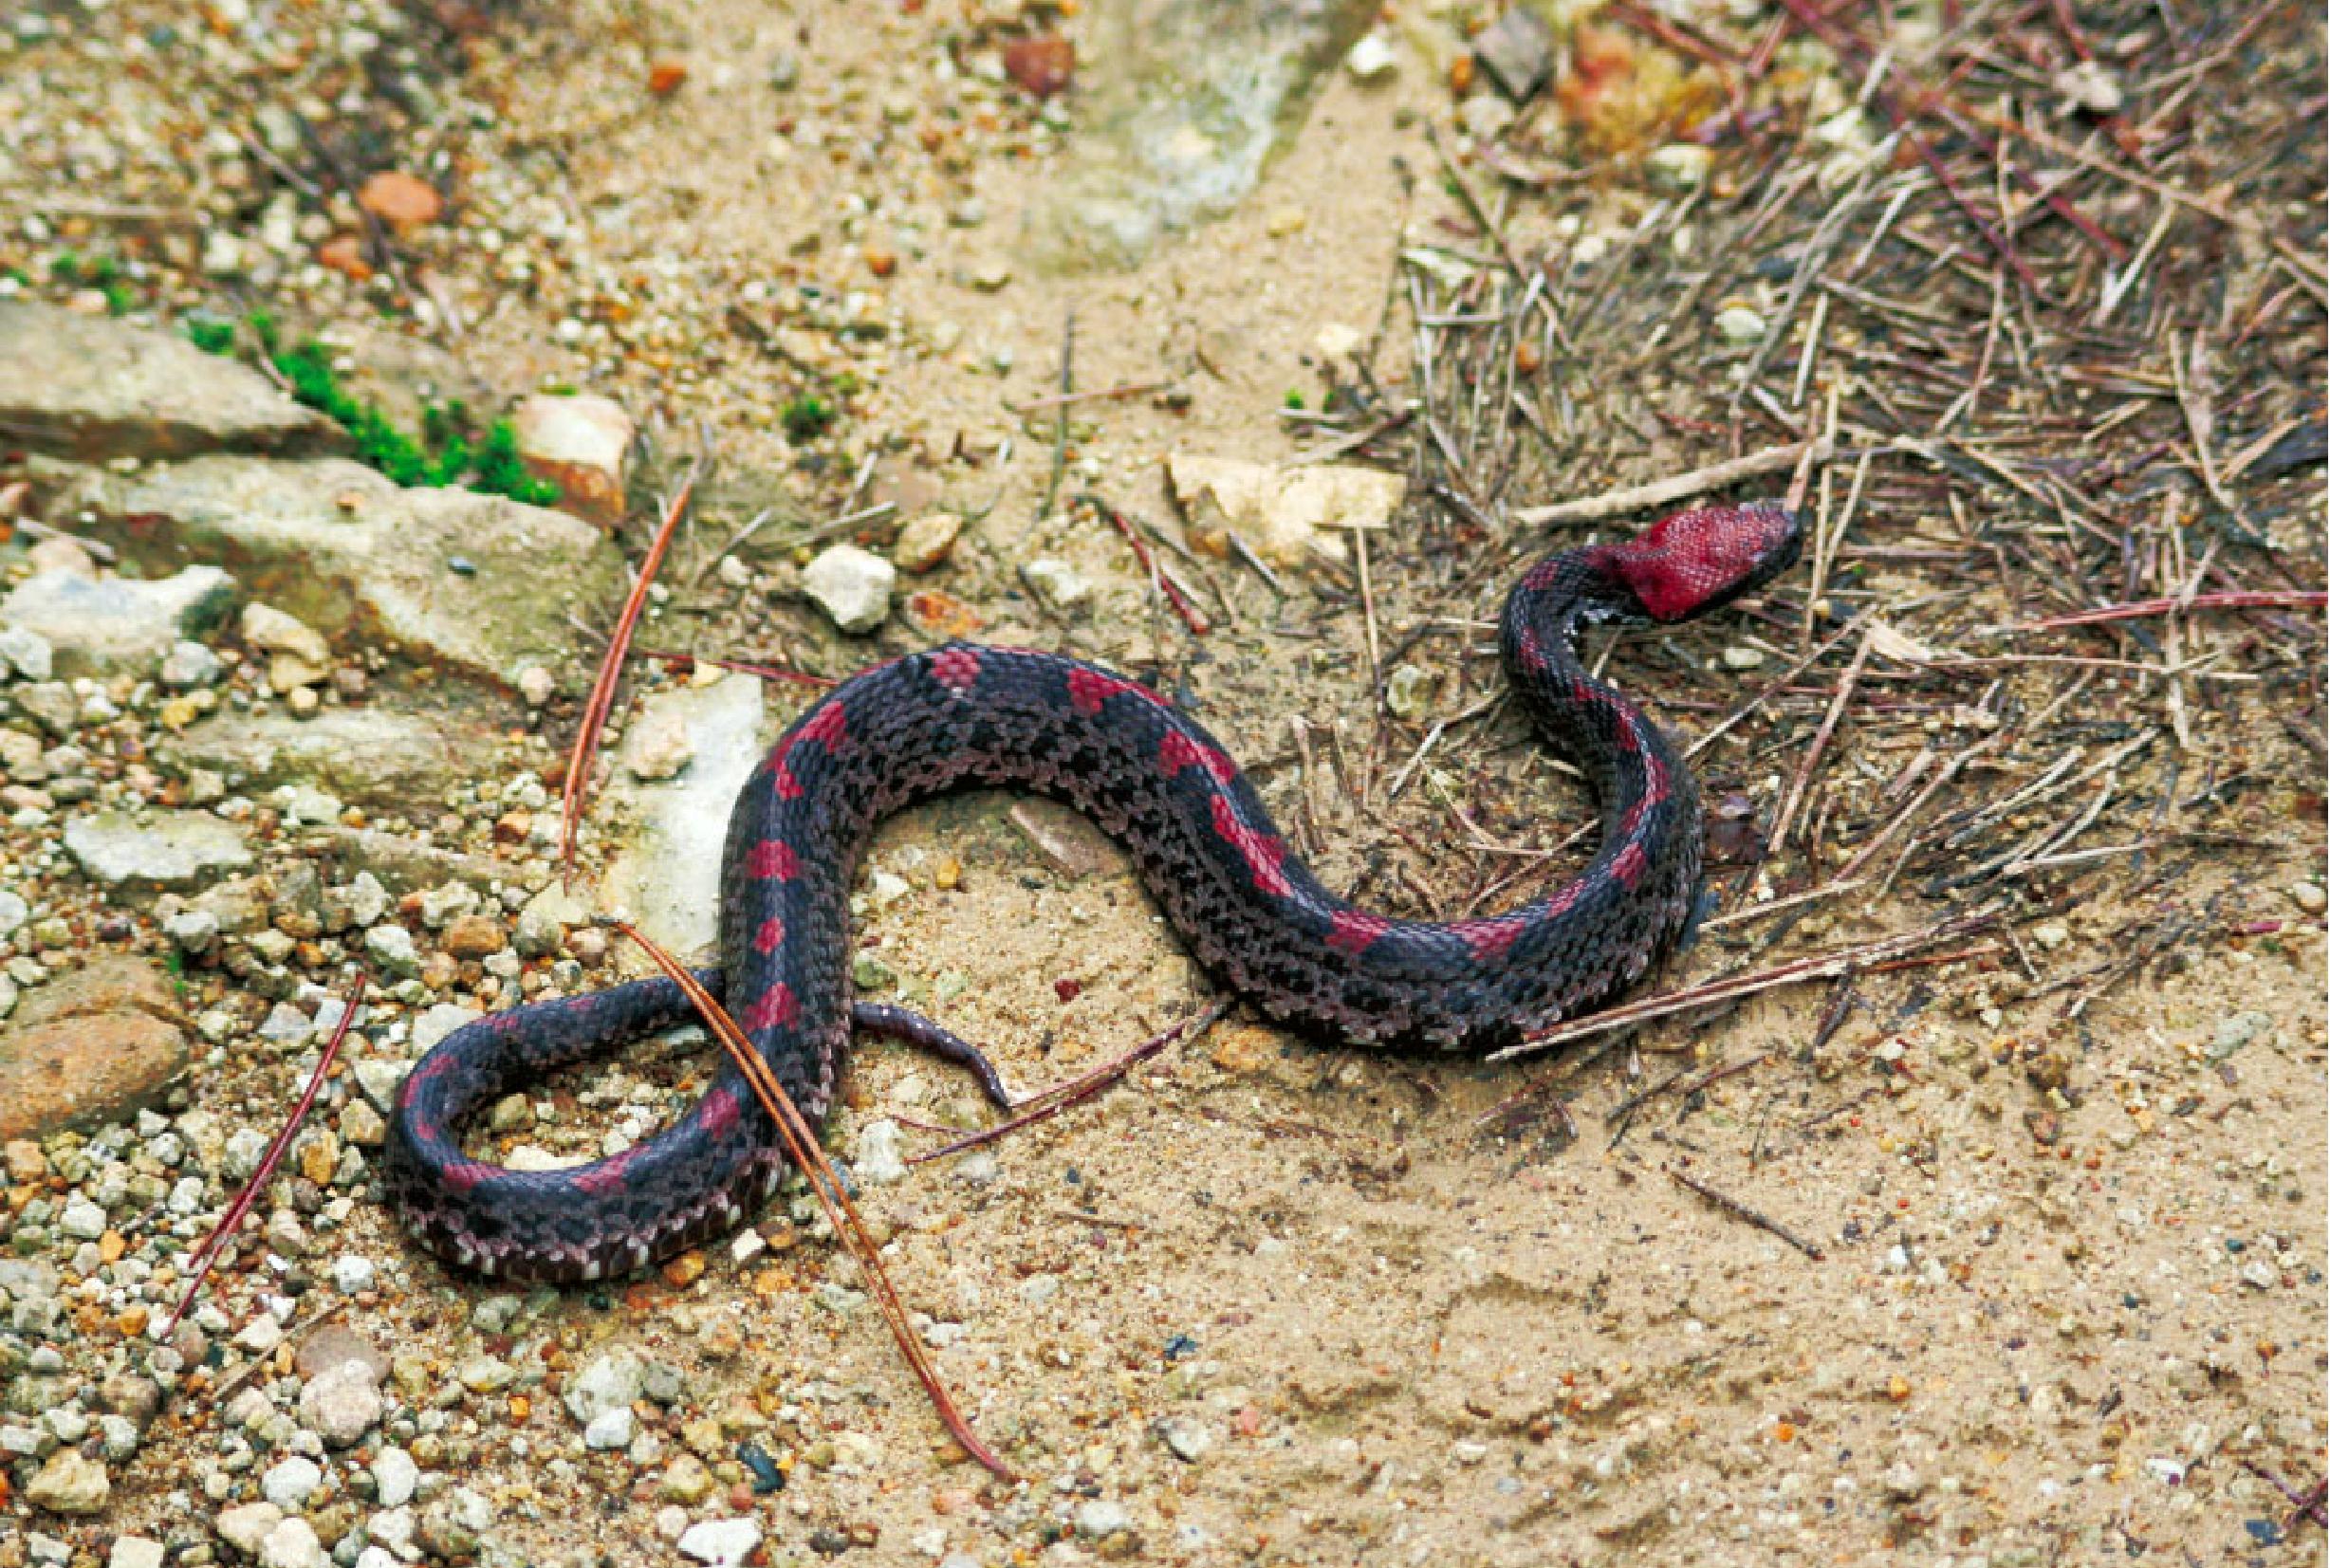 贵州烙铁头蛇图片